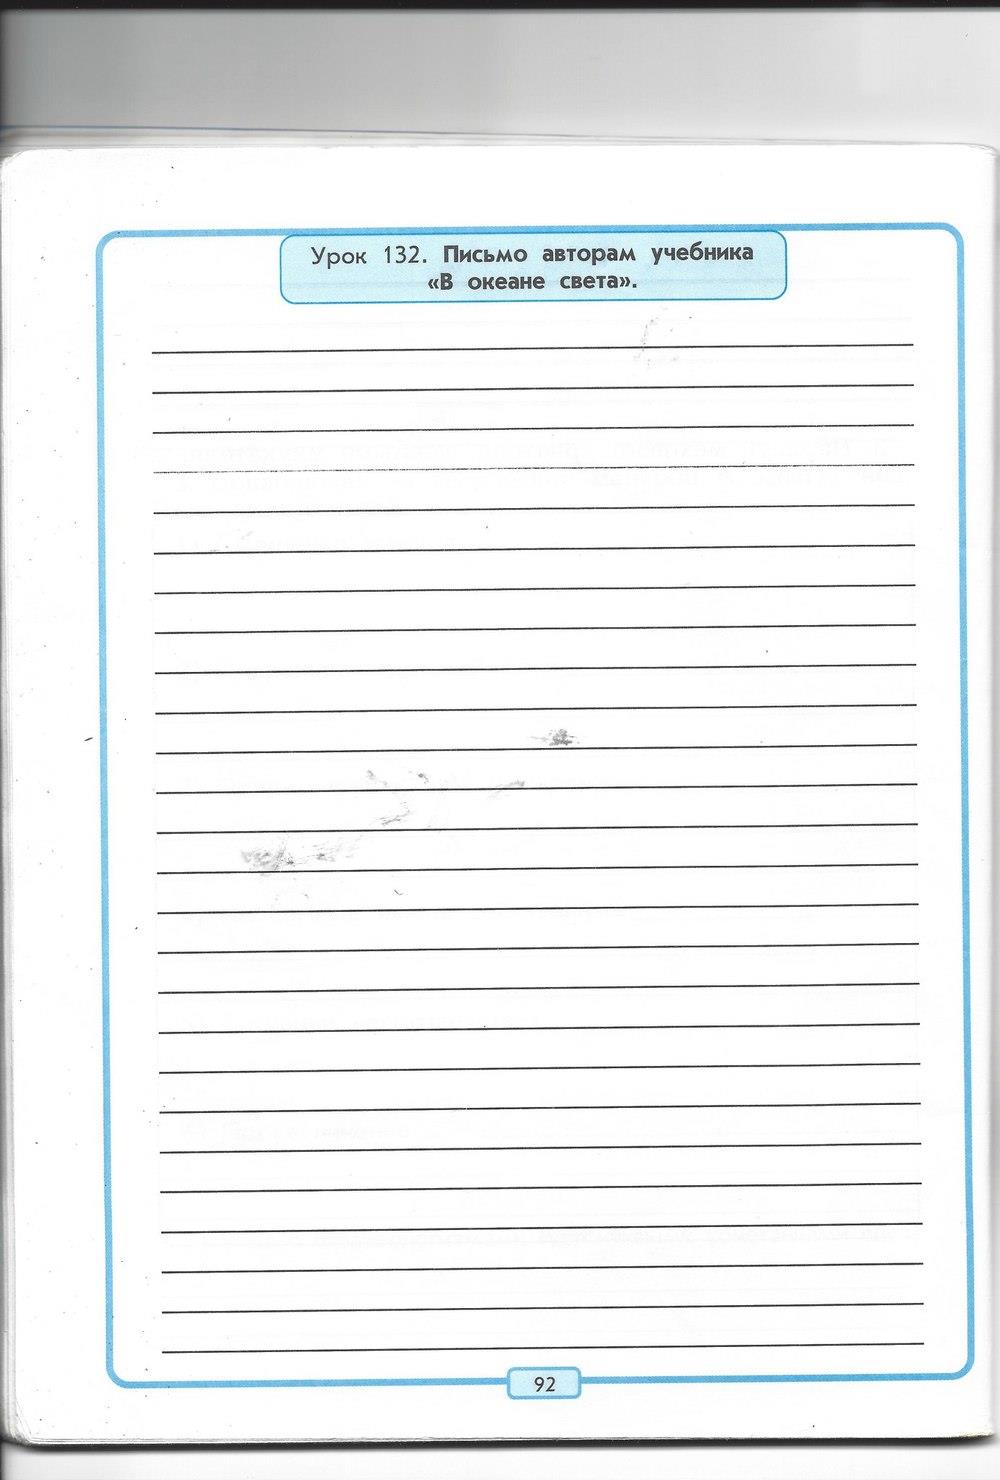 гдз 4 класс рабочая тетрадь страница 92 литературное чтение Бунеев, Бунеева, Чиндилова